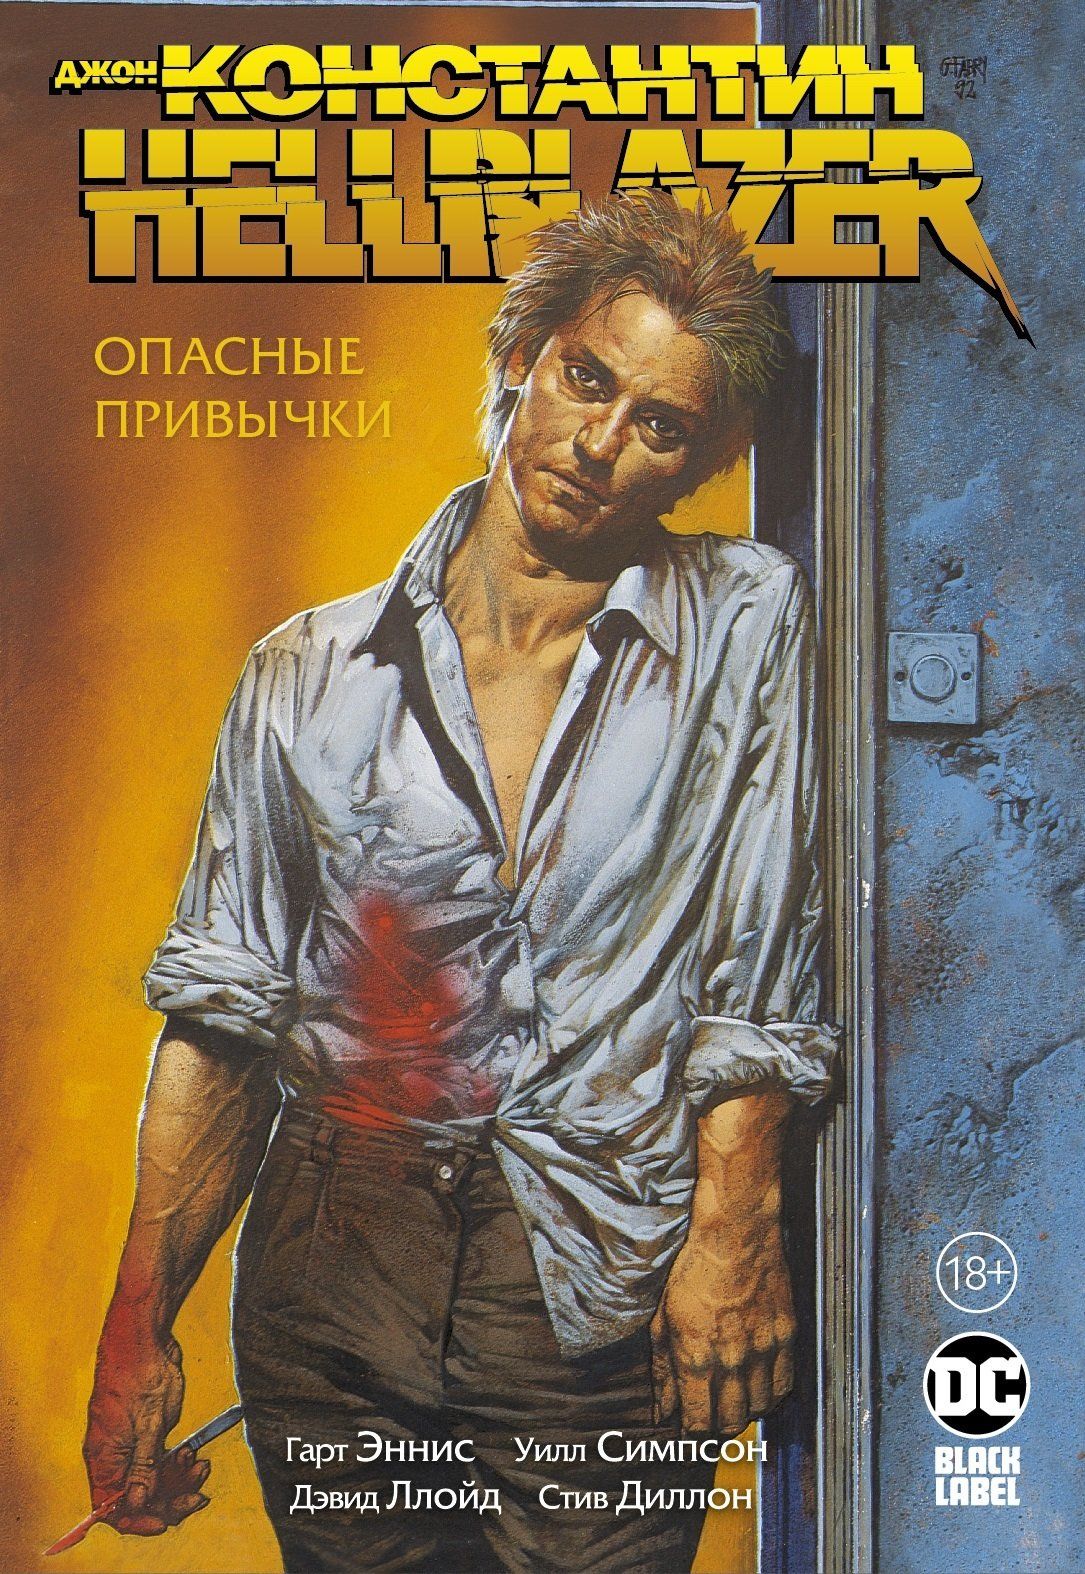 Комикс на русском языке «Джон Константин. Hellblazer. Опасные привычки»